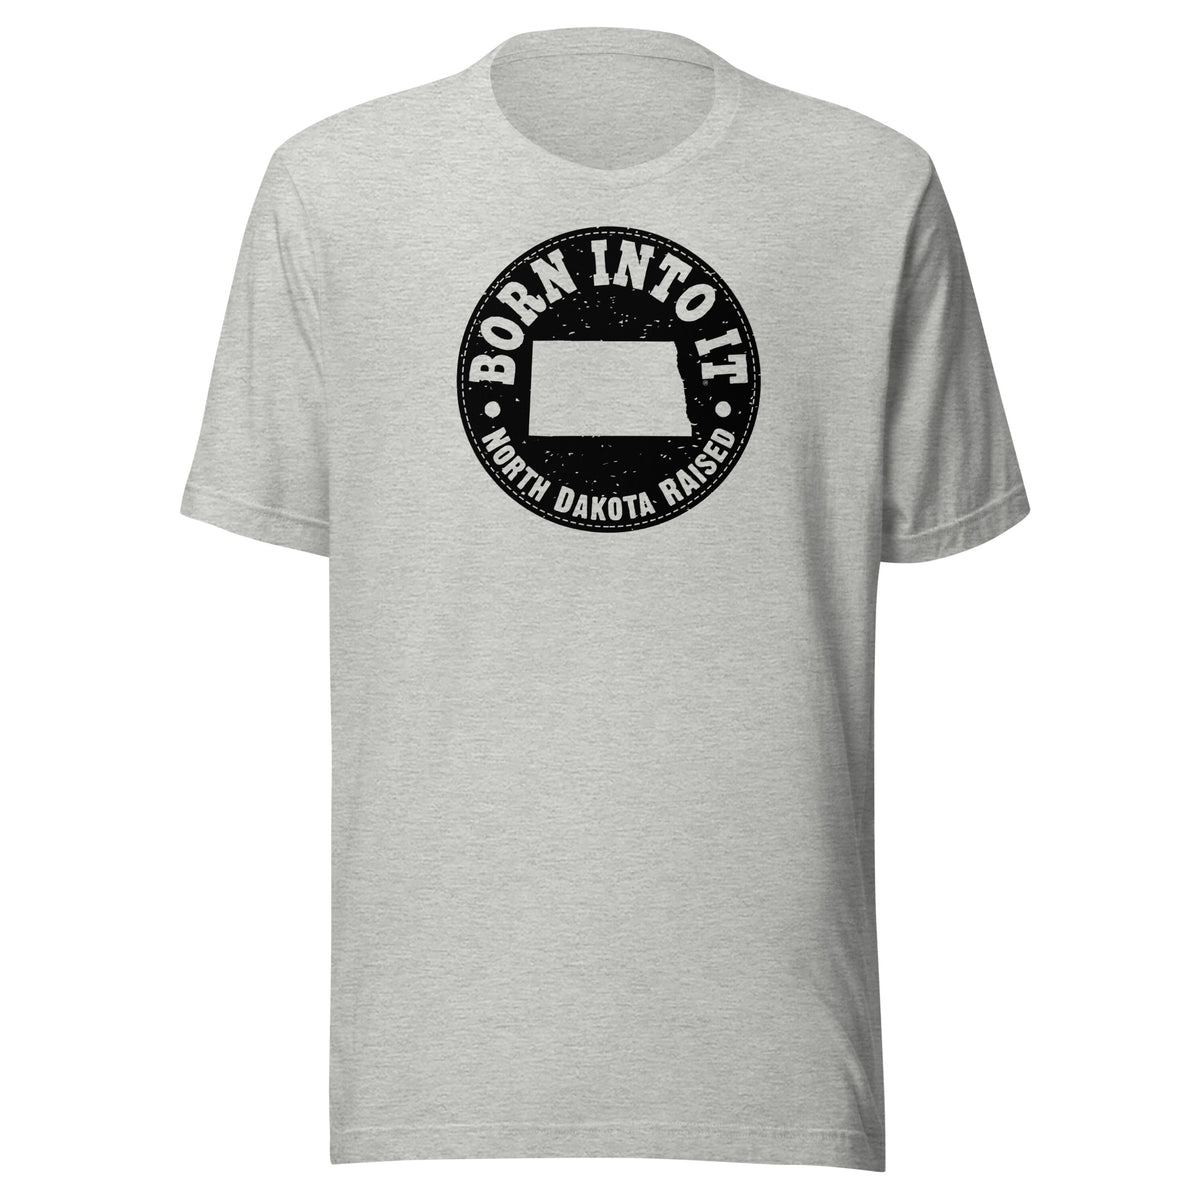 North Dakota Raised Unisex T-Shirt